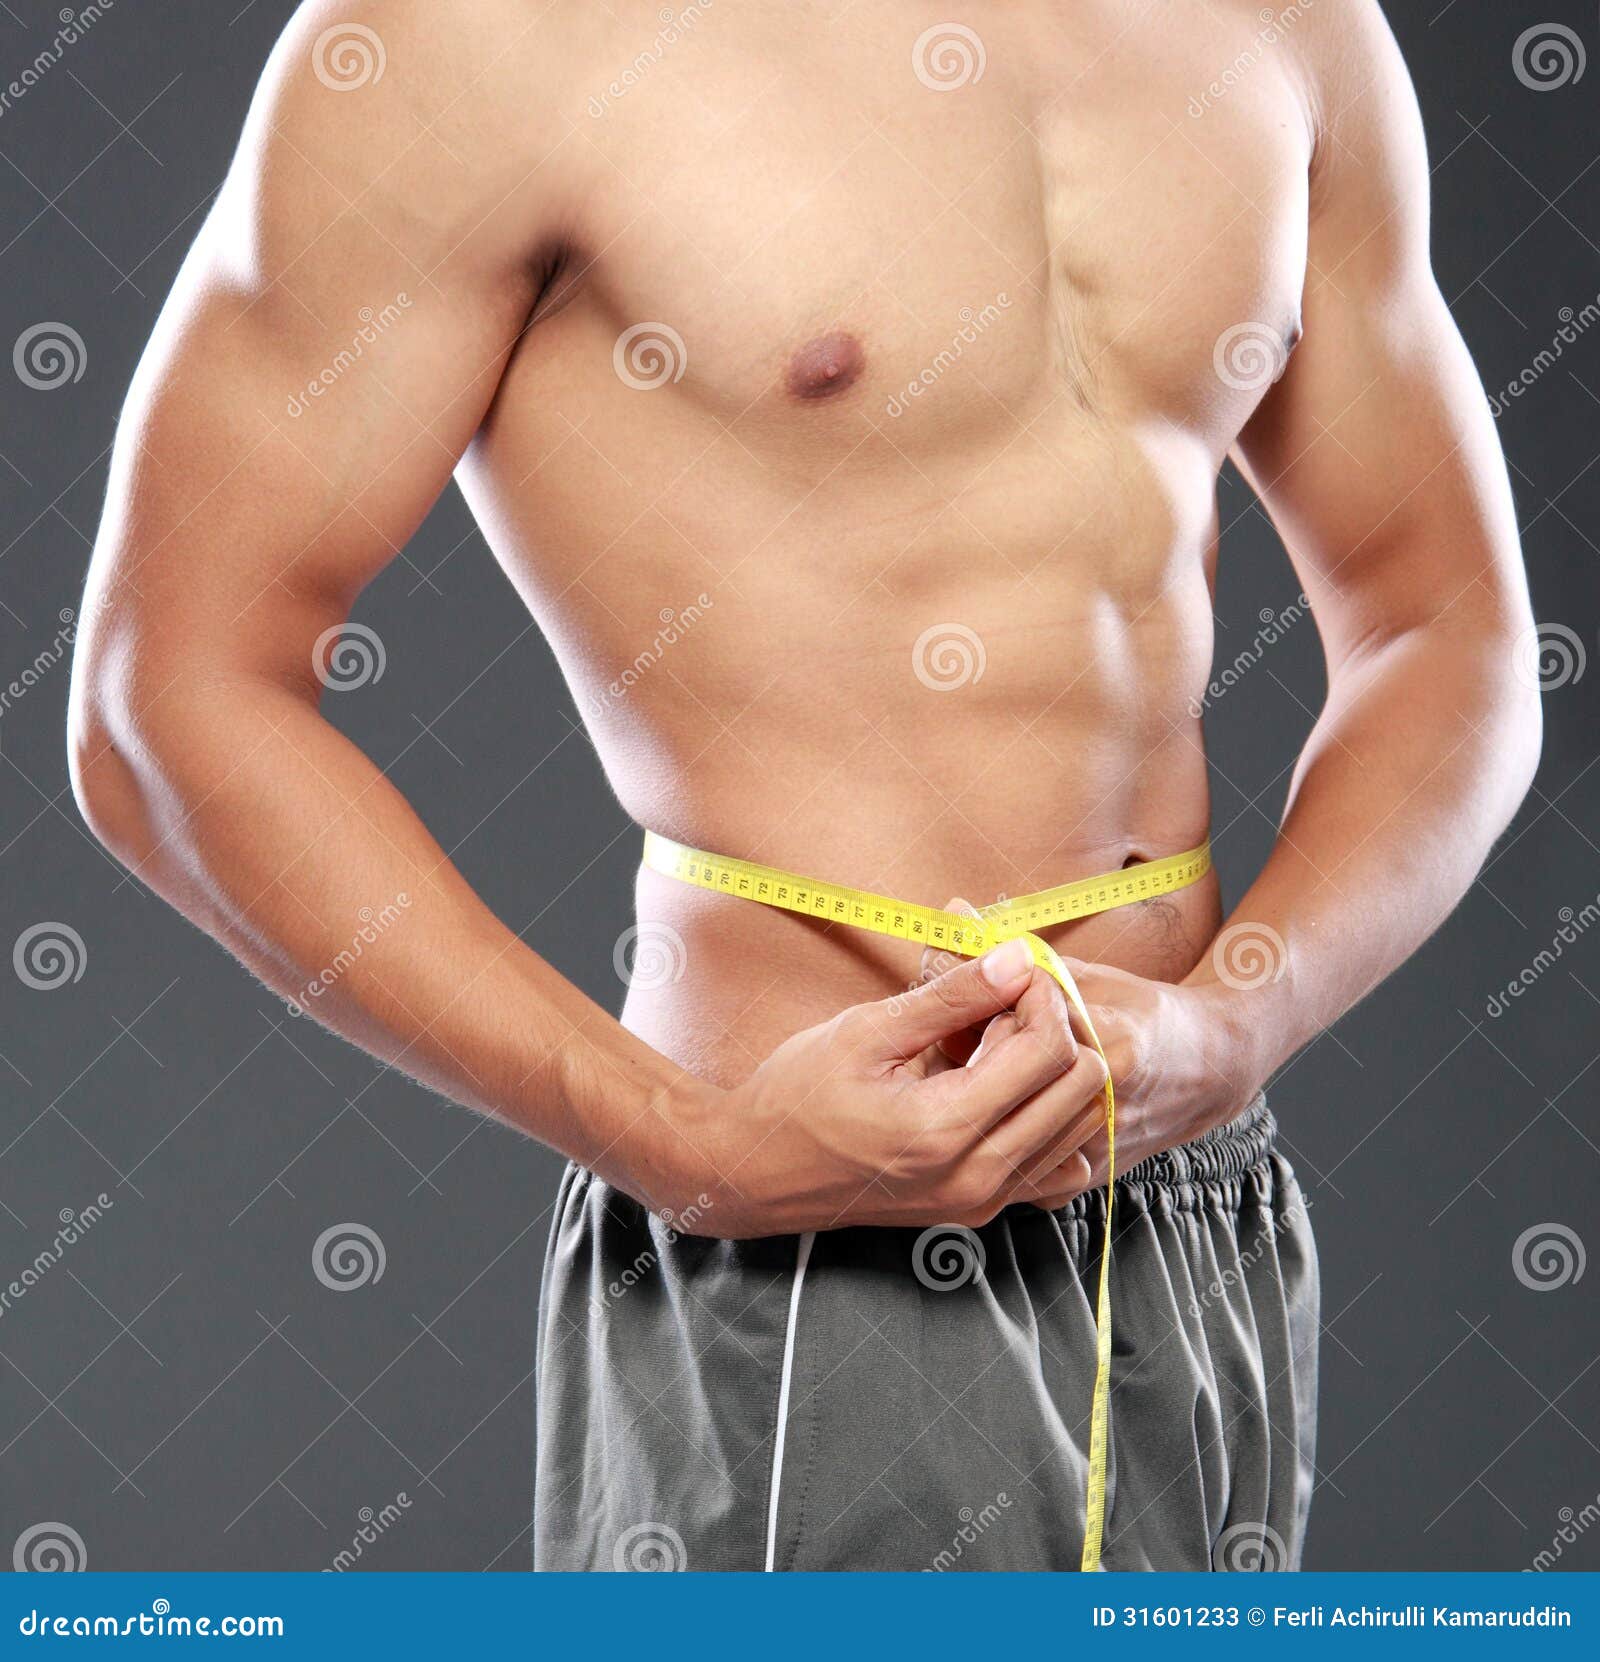 Ritratto degli uomini con gli ABS perfetti che misurano la sua vita